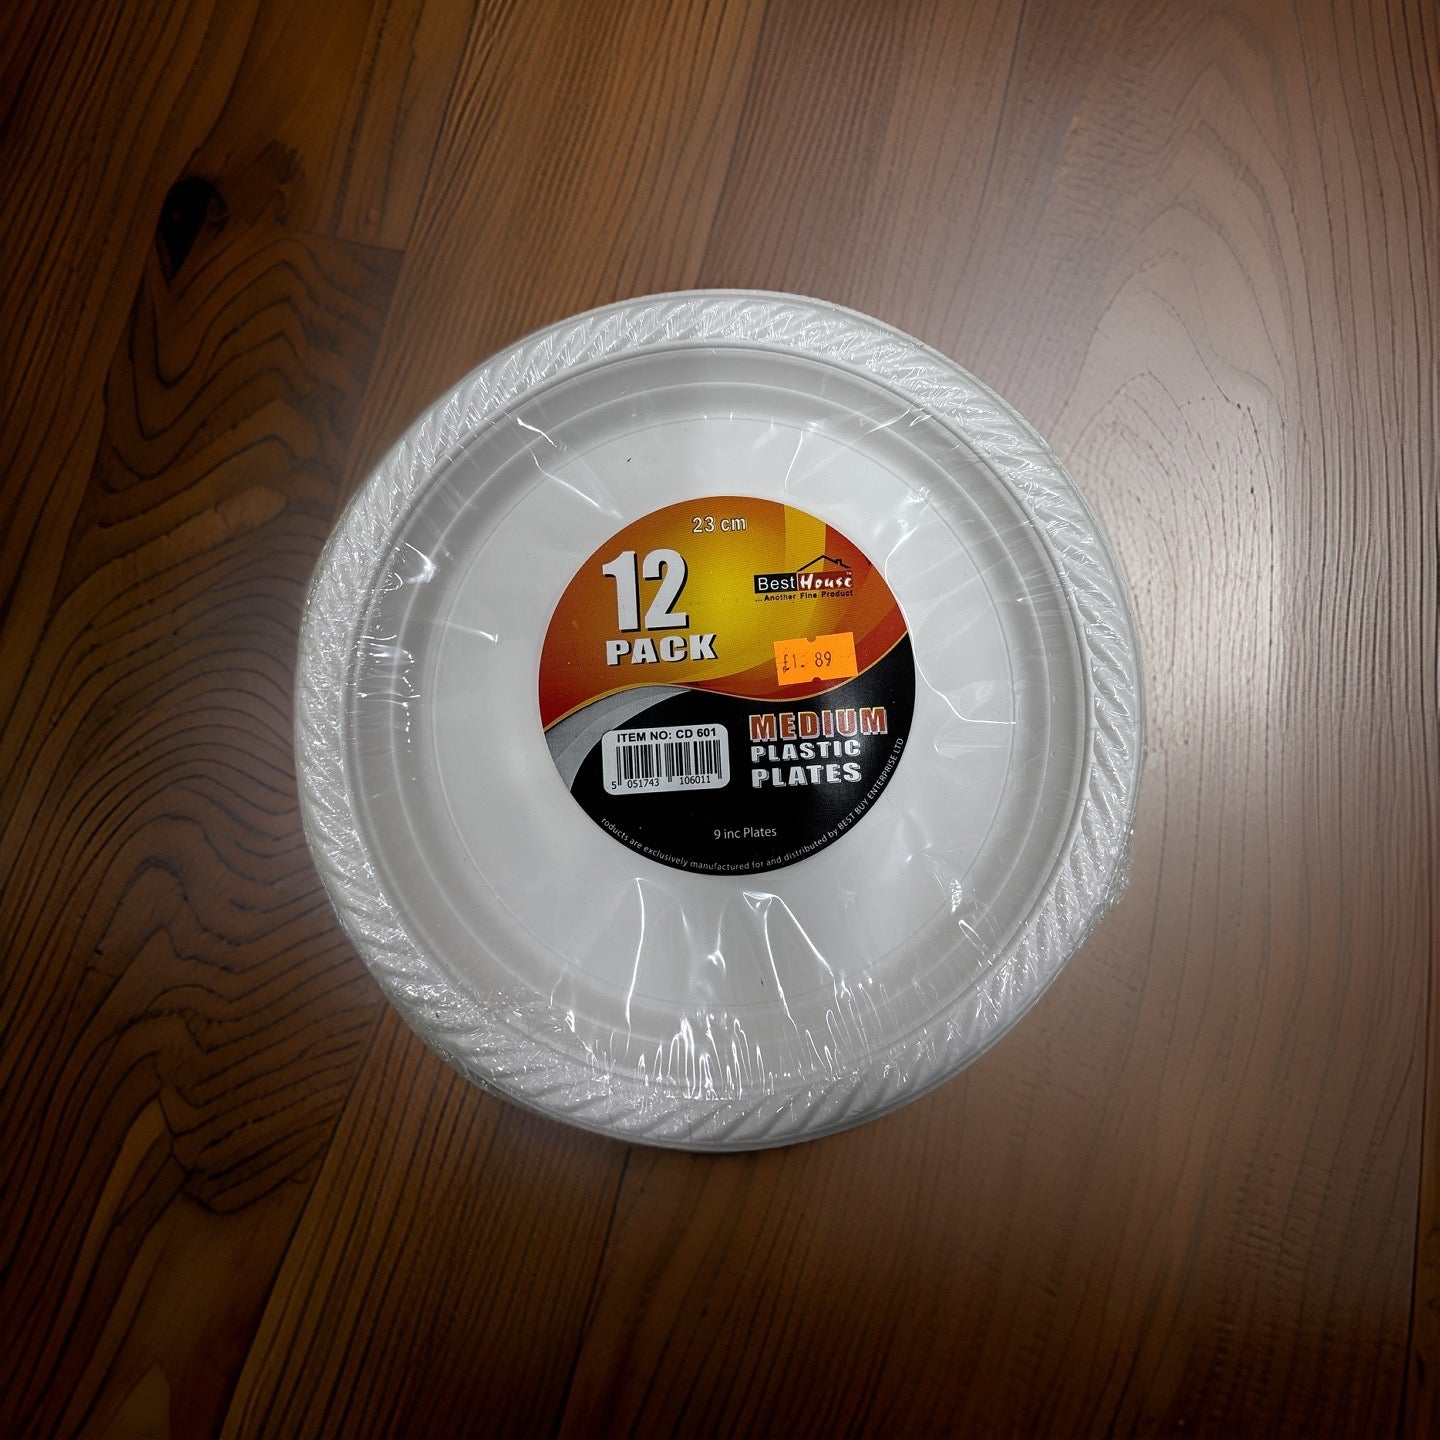 Pack12 23cm plastic plates